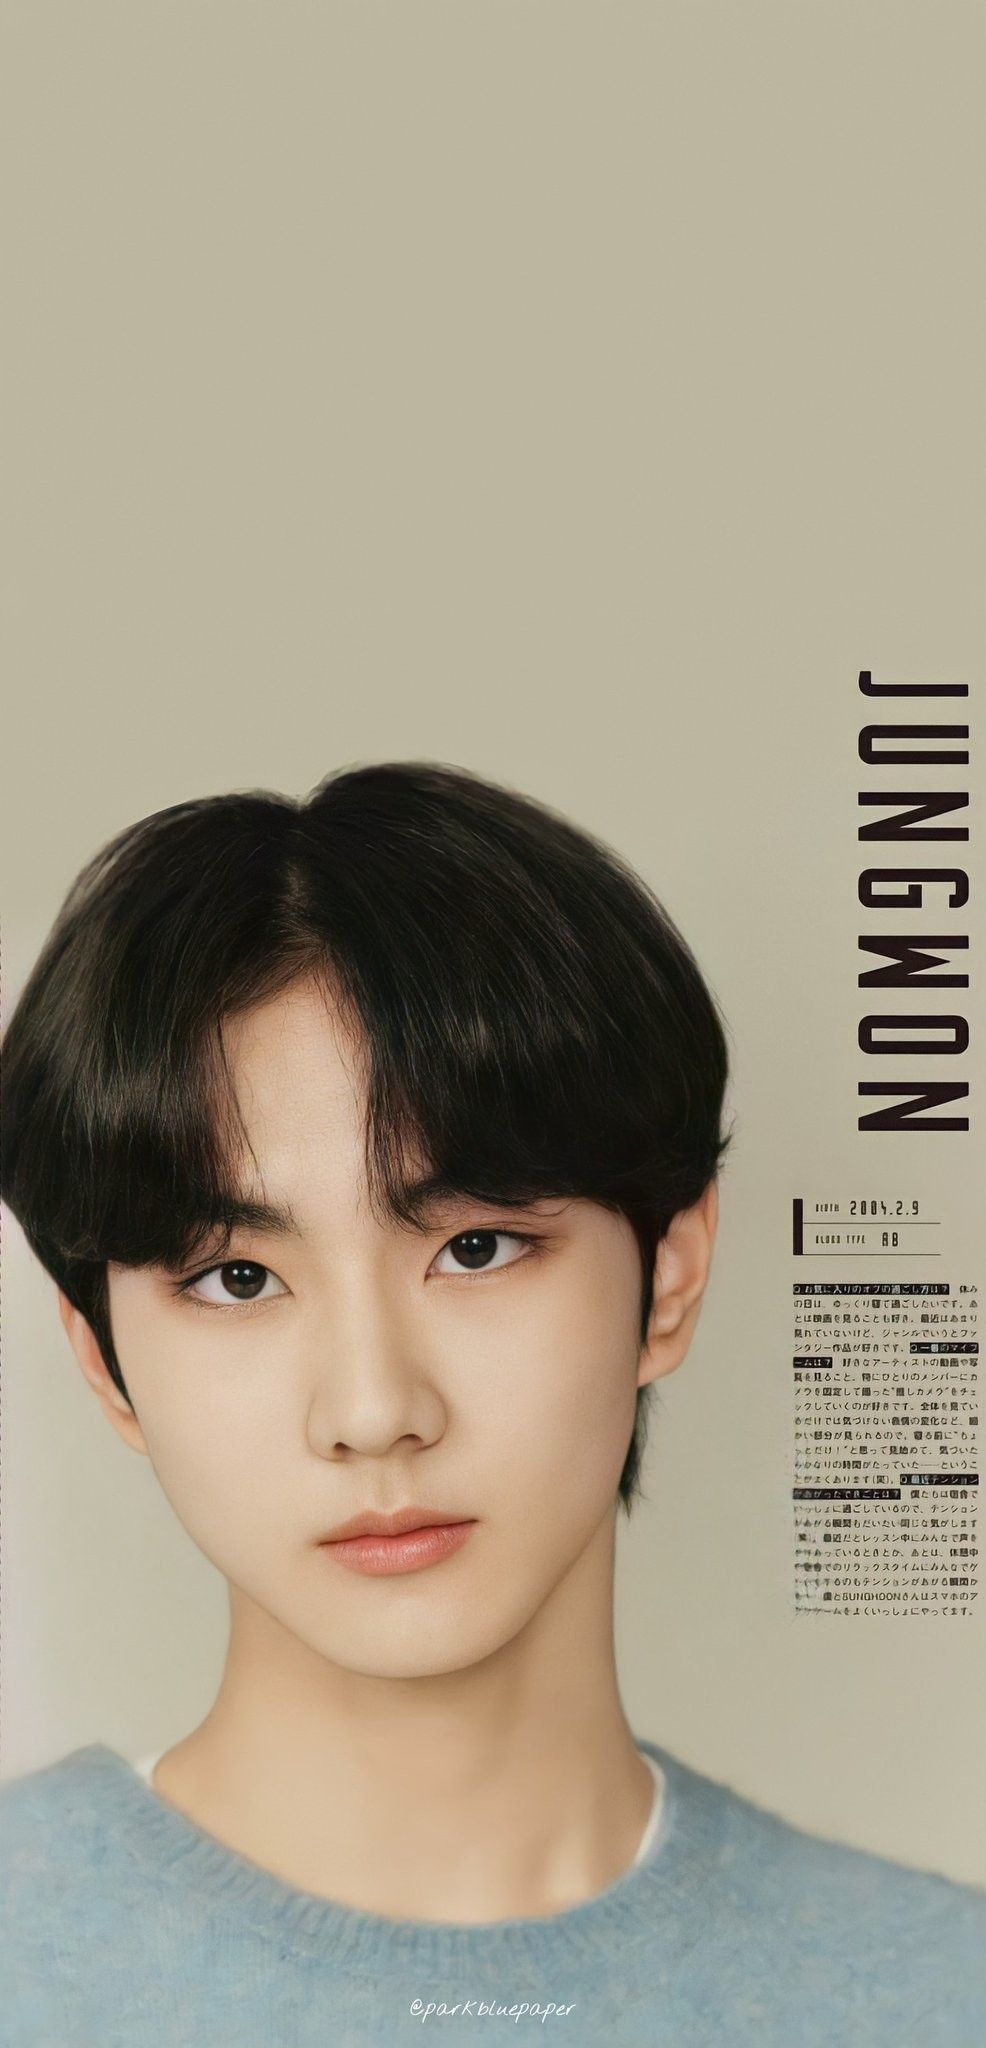 Jungwon Enhypen Wallpaper di 2021. Gambar wajah, Selebritas, Fotografi inspirasi